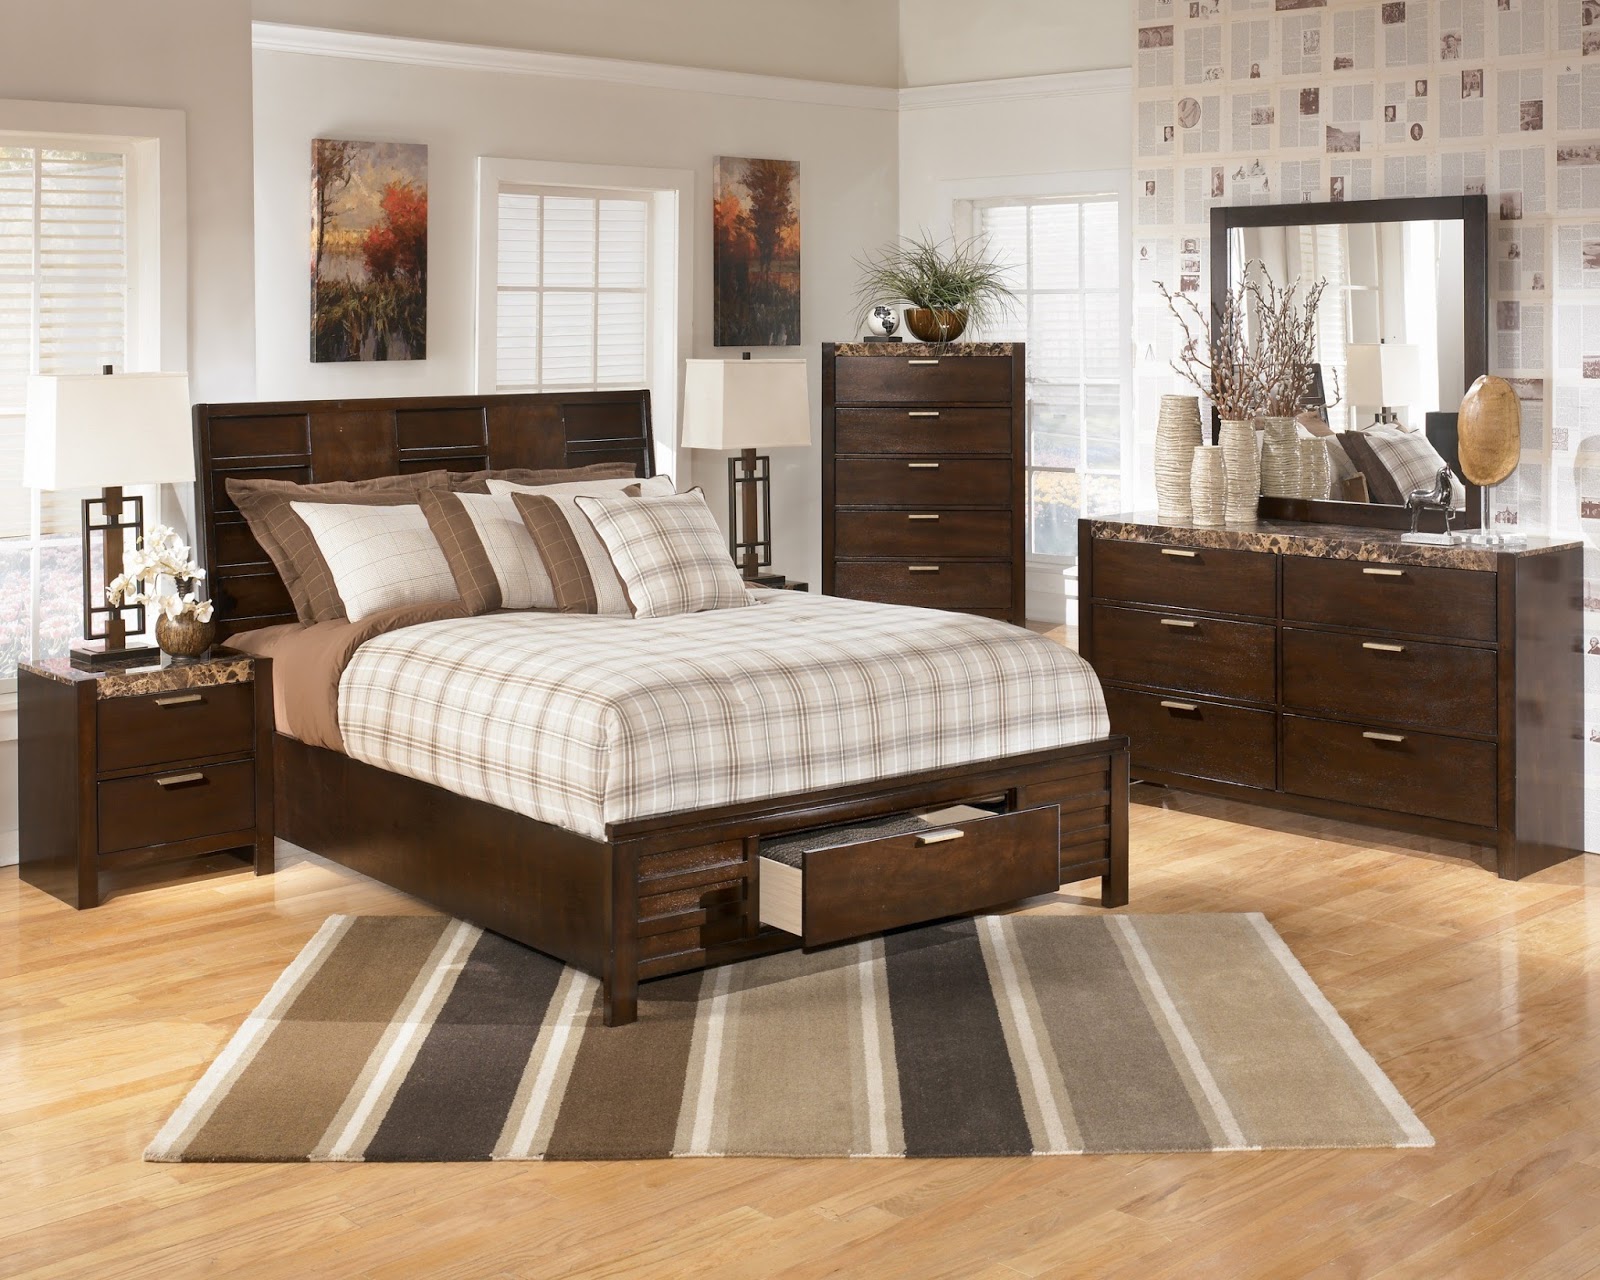 How To Arrange Bedroom Furniture Elegant For Your Bedroom Design Planning with How To Arrange Bedroom Furniture Home Decoration Ideas